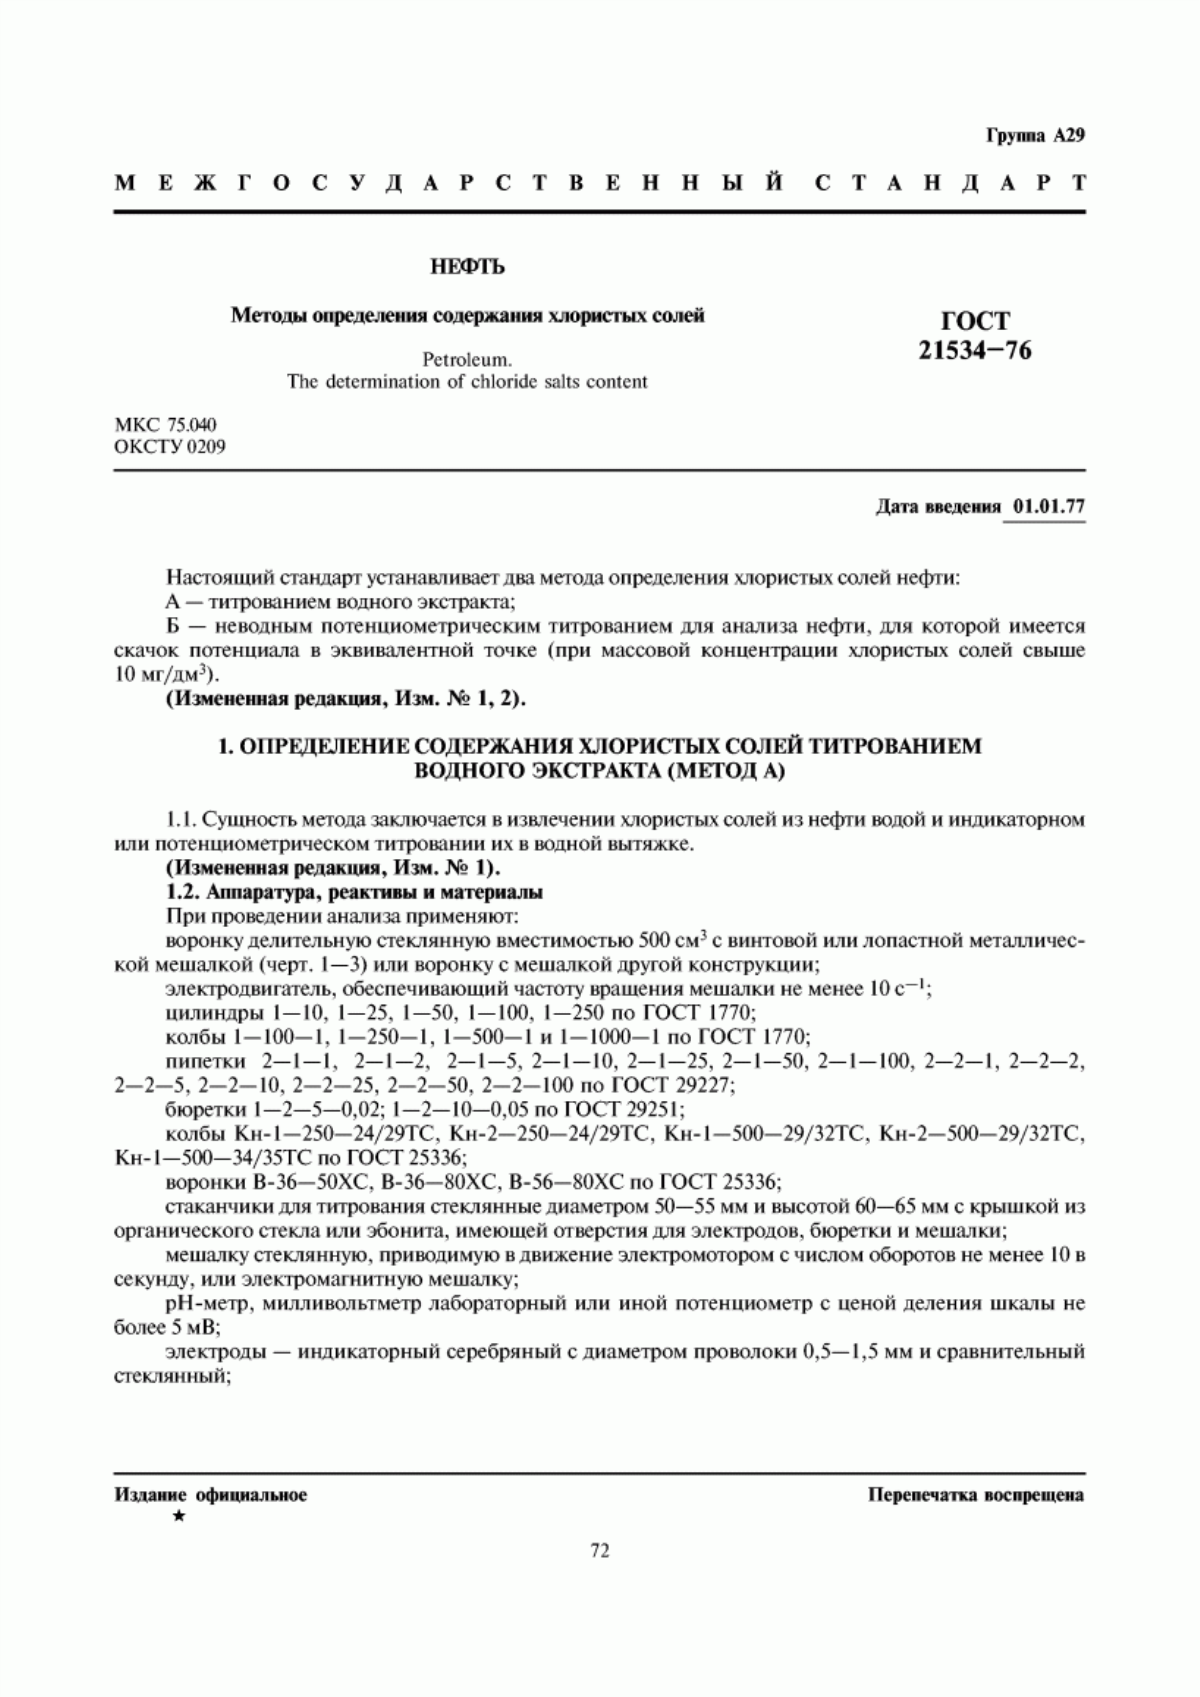 ГОСТ 21534-76 Нефть. Методы определения содержания хлористых солей